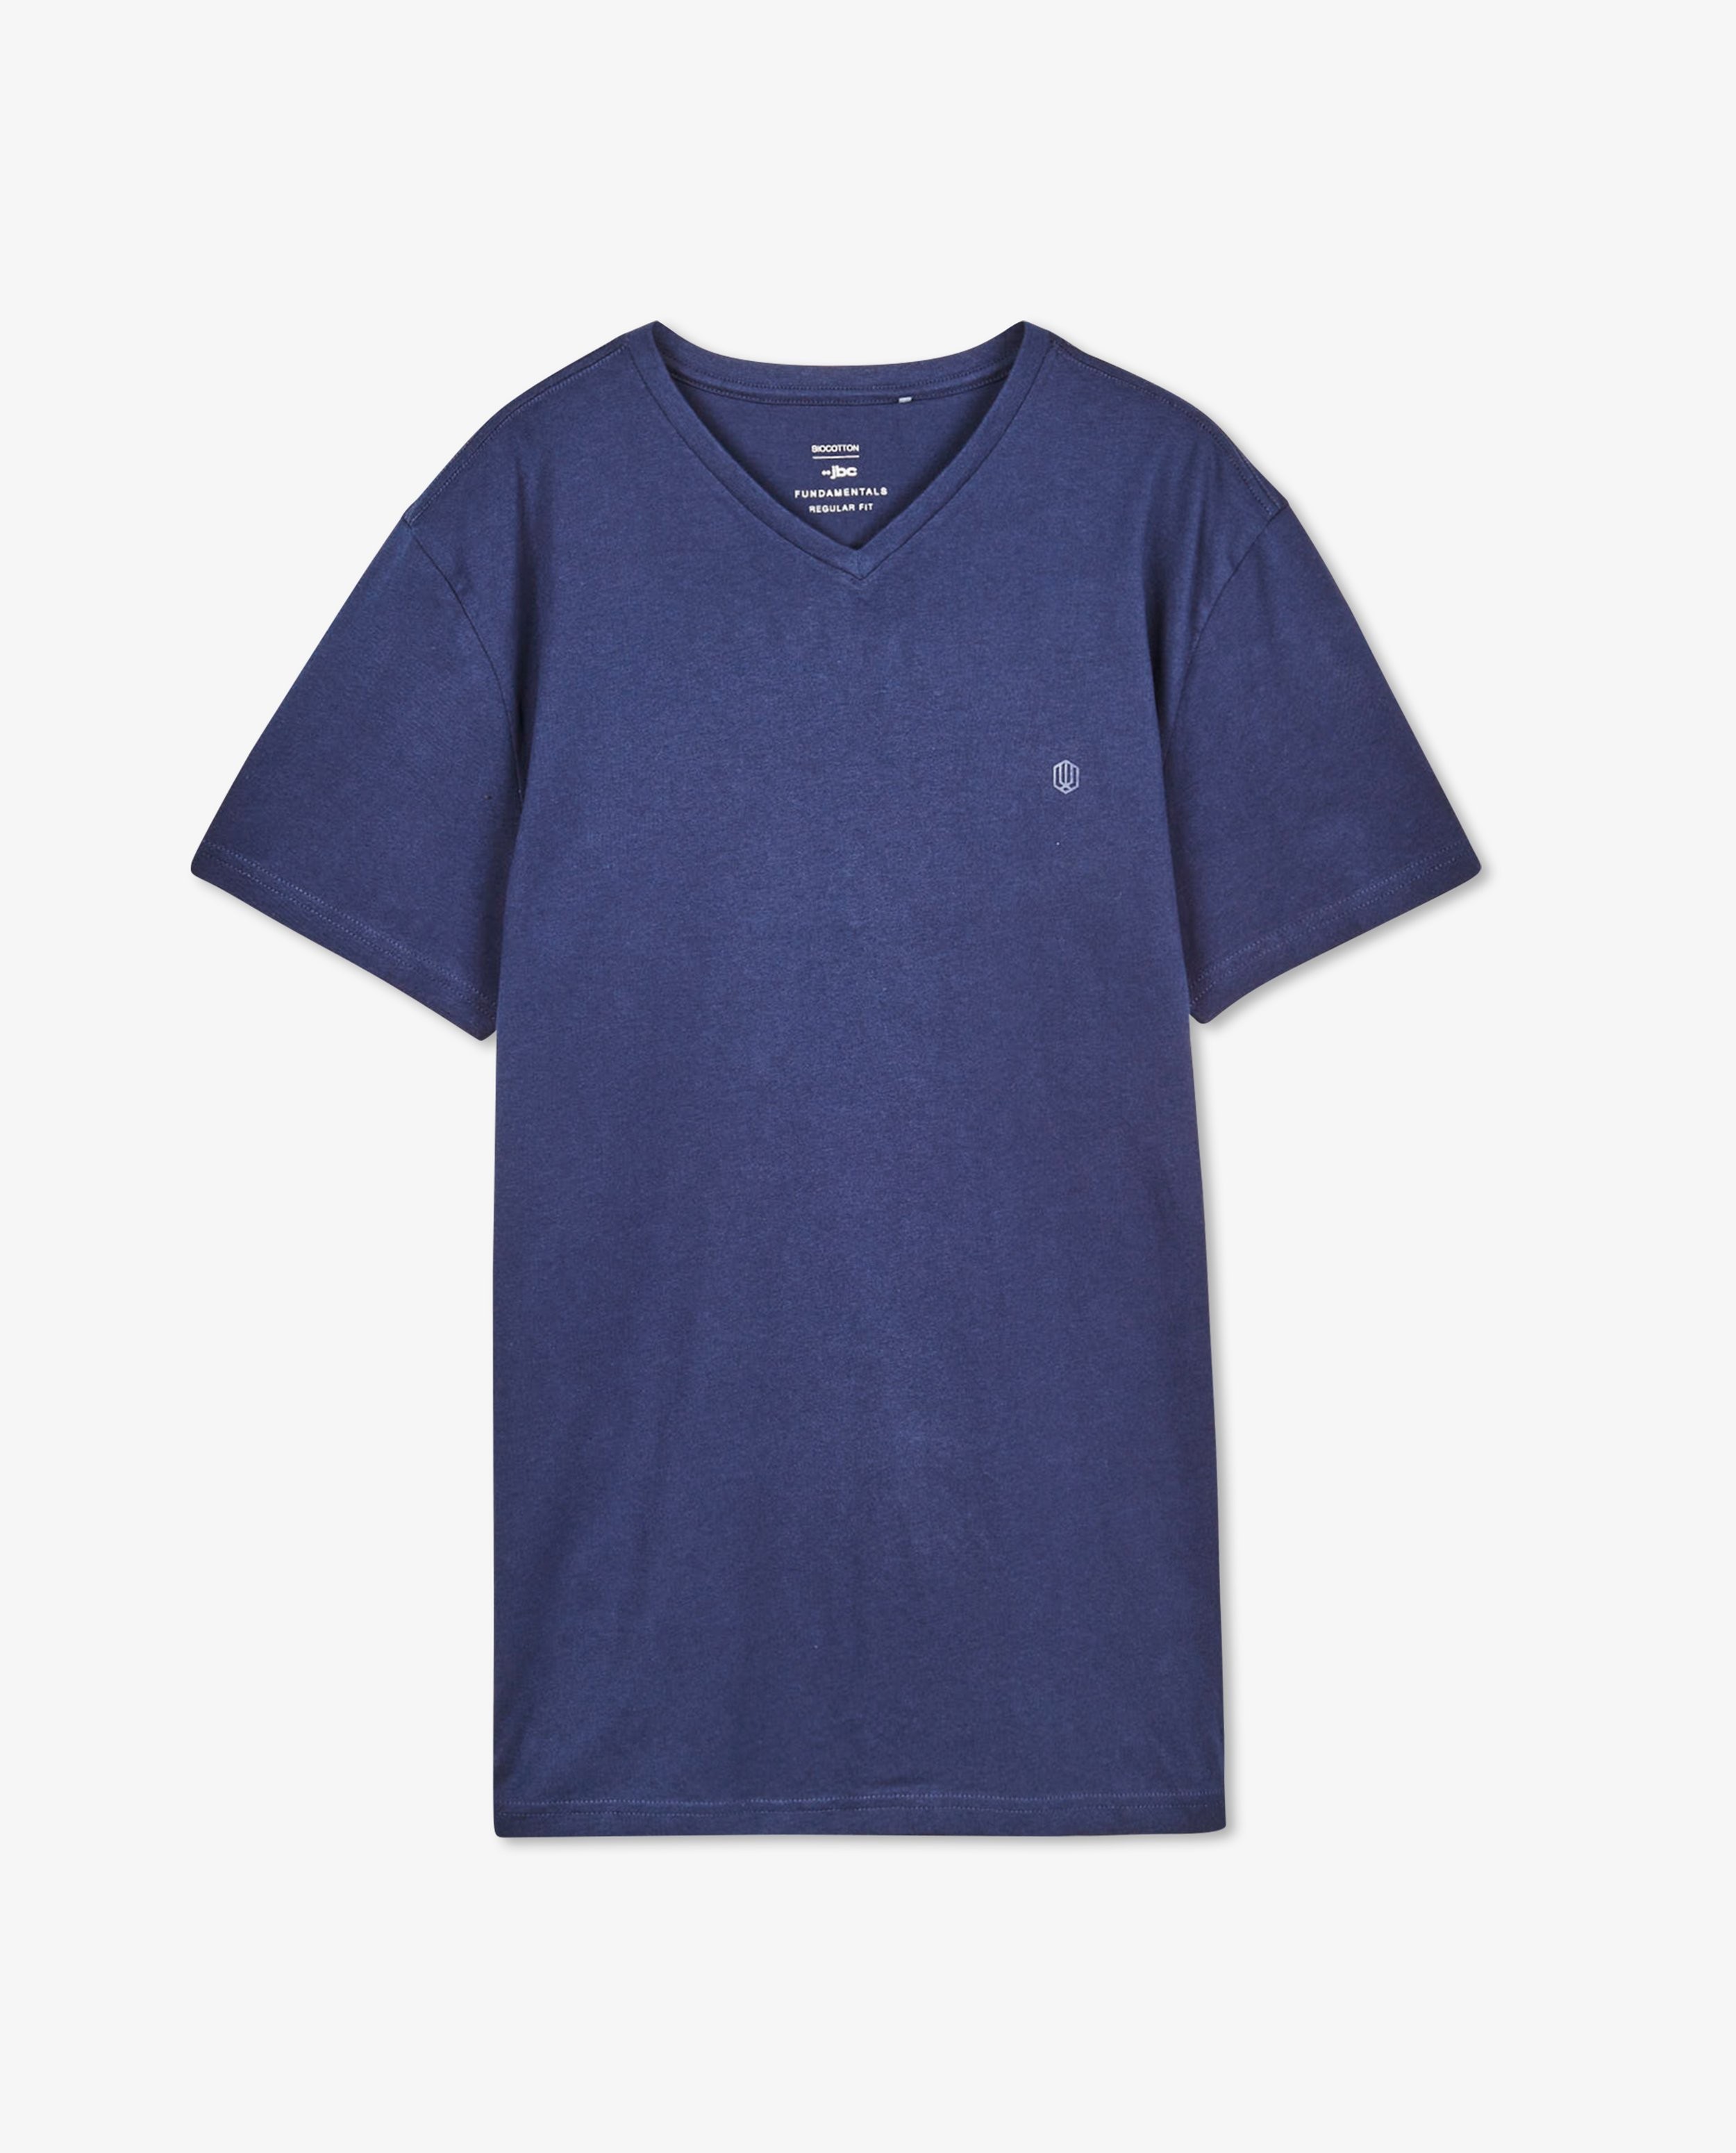 T-shirts - T-shirt bleu foncé en coton bio, col en V 